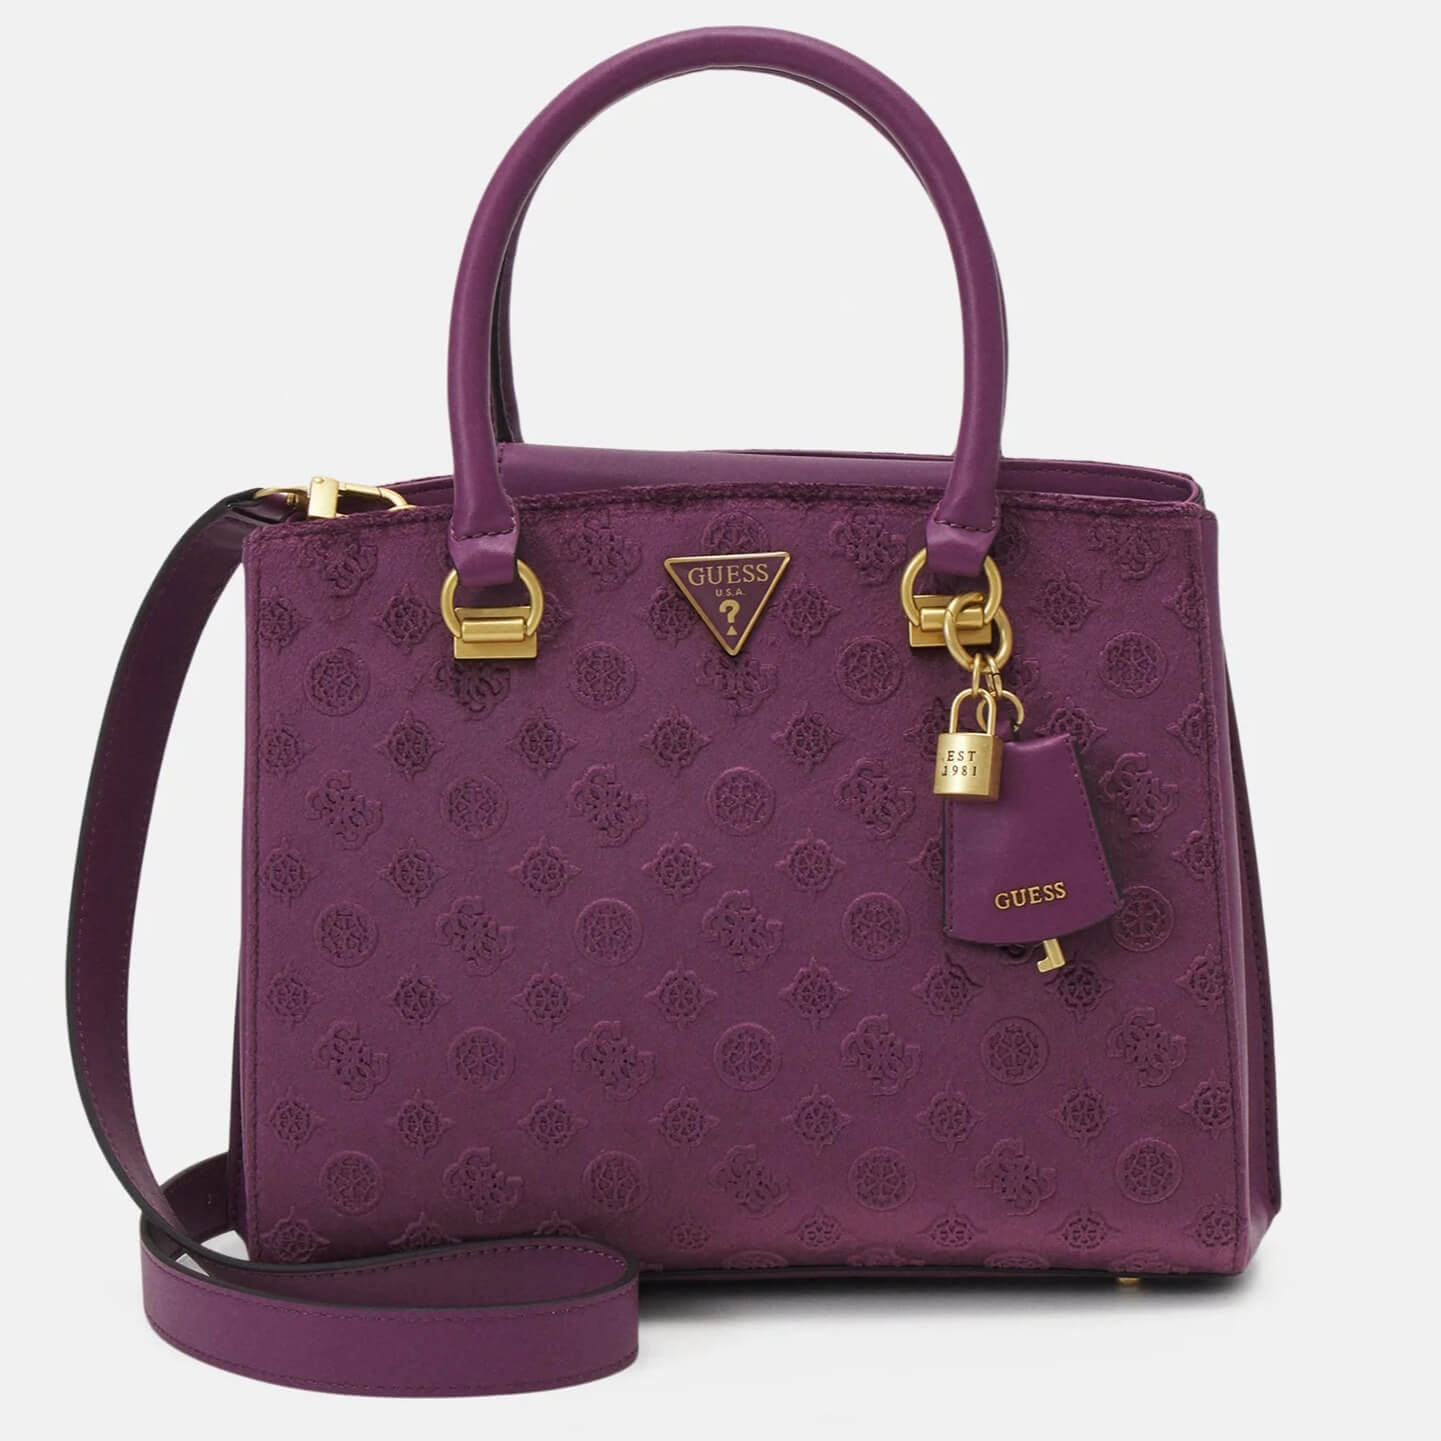 Сумка-тоут Guess Ales Girlfriend Satchel, фиолетовый сумка тоут guess ales girlfriend satchel фиолетовый